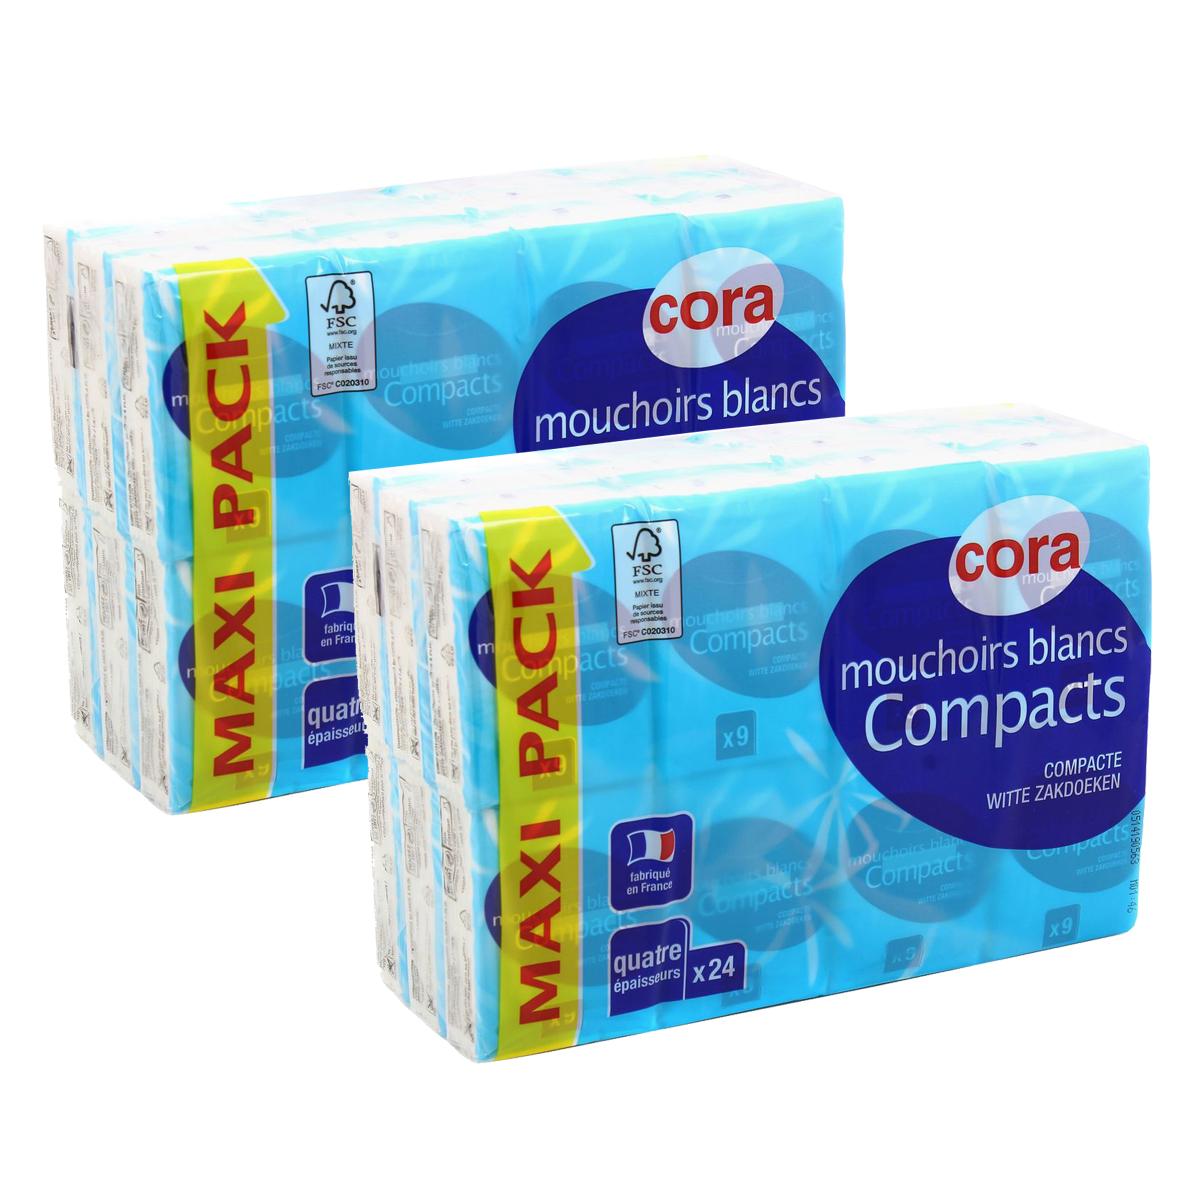 Promotion Cora Mouchoirs blancs compacts en étuis 4 plis, Lot de 2 x 24x9  mouchoirs